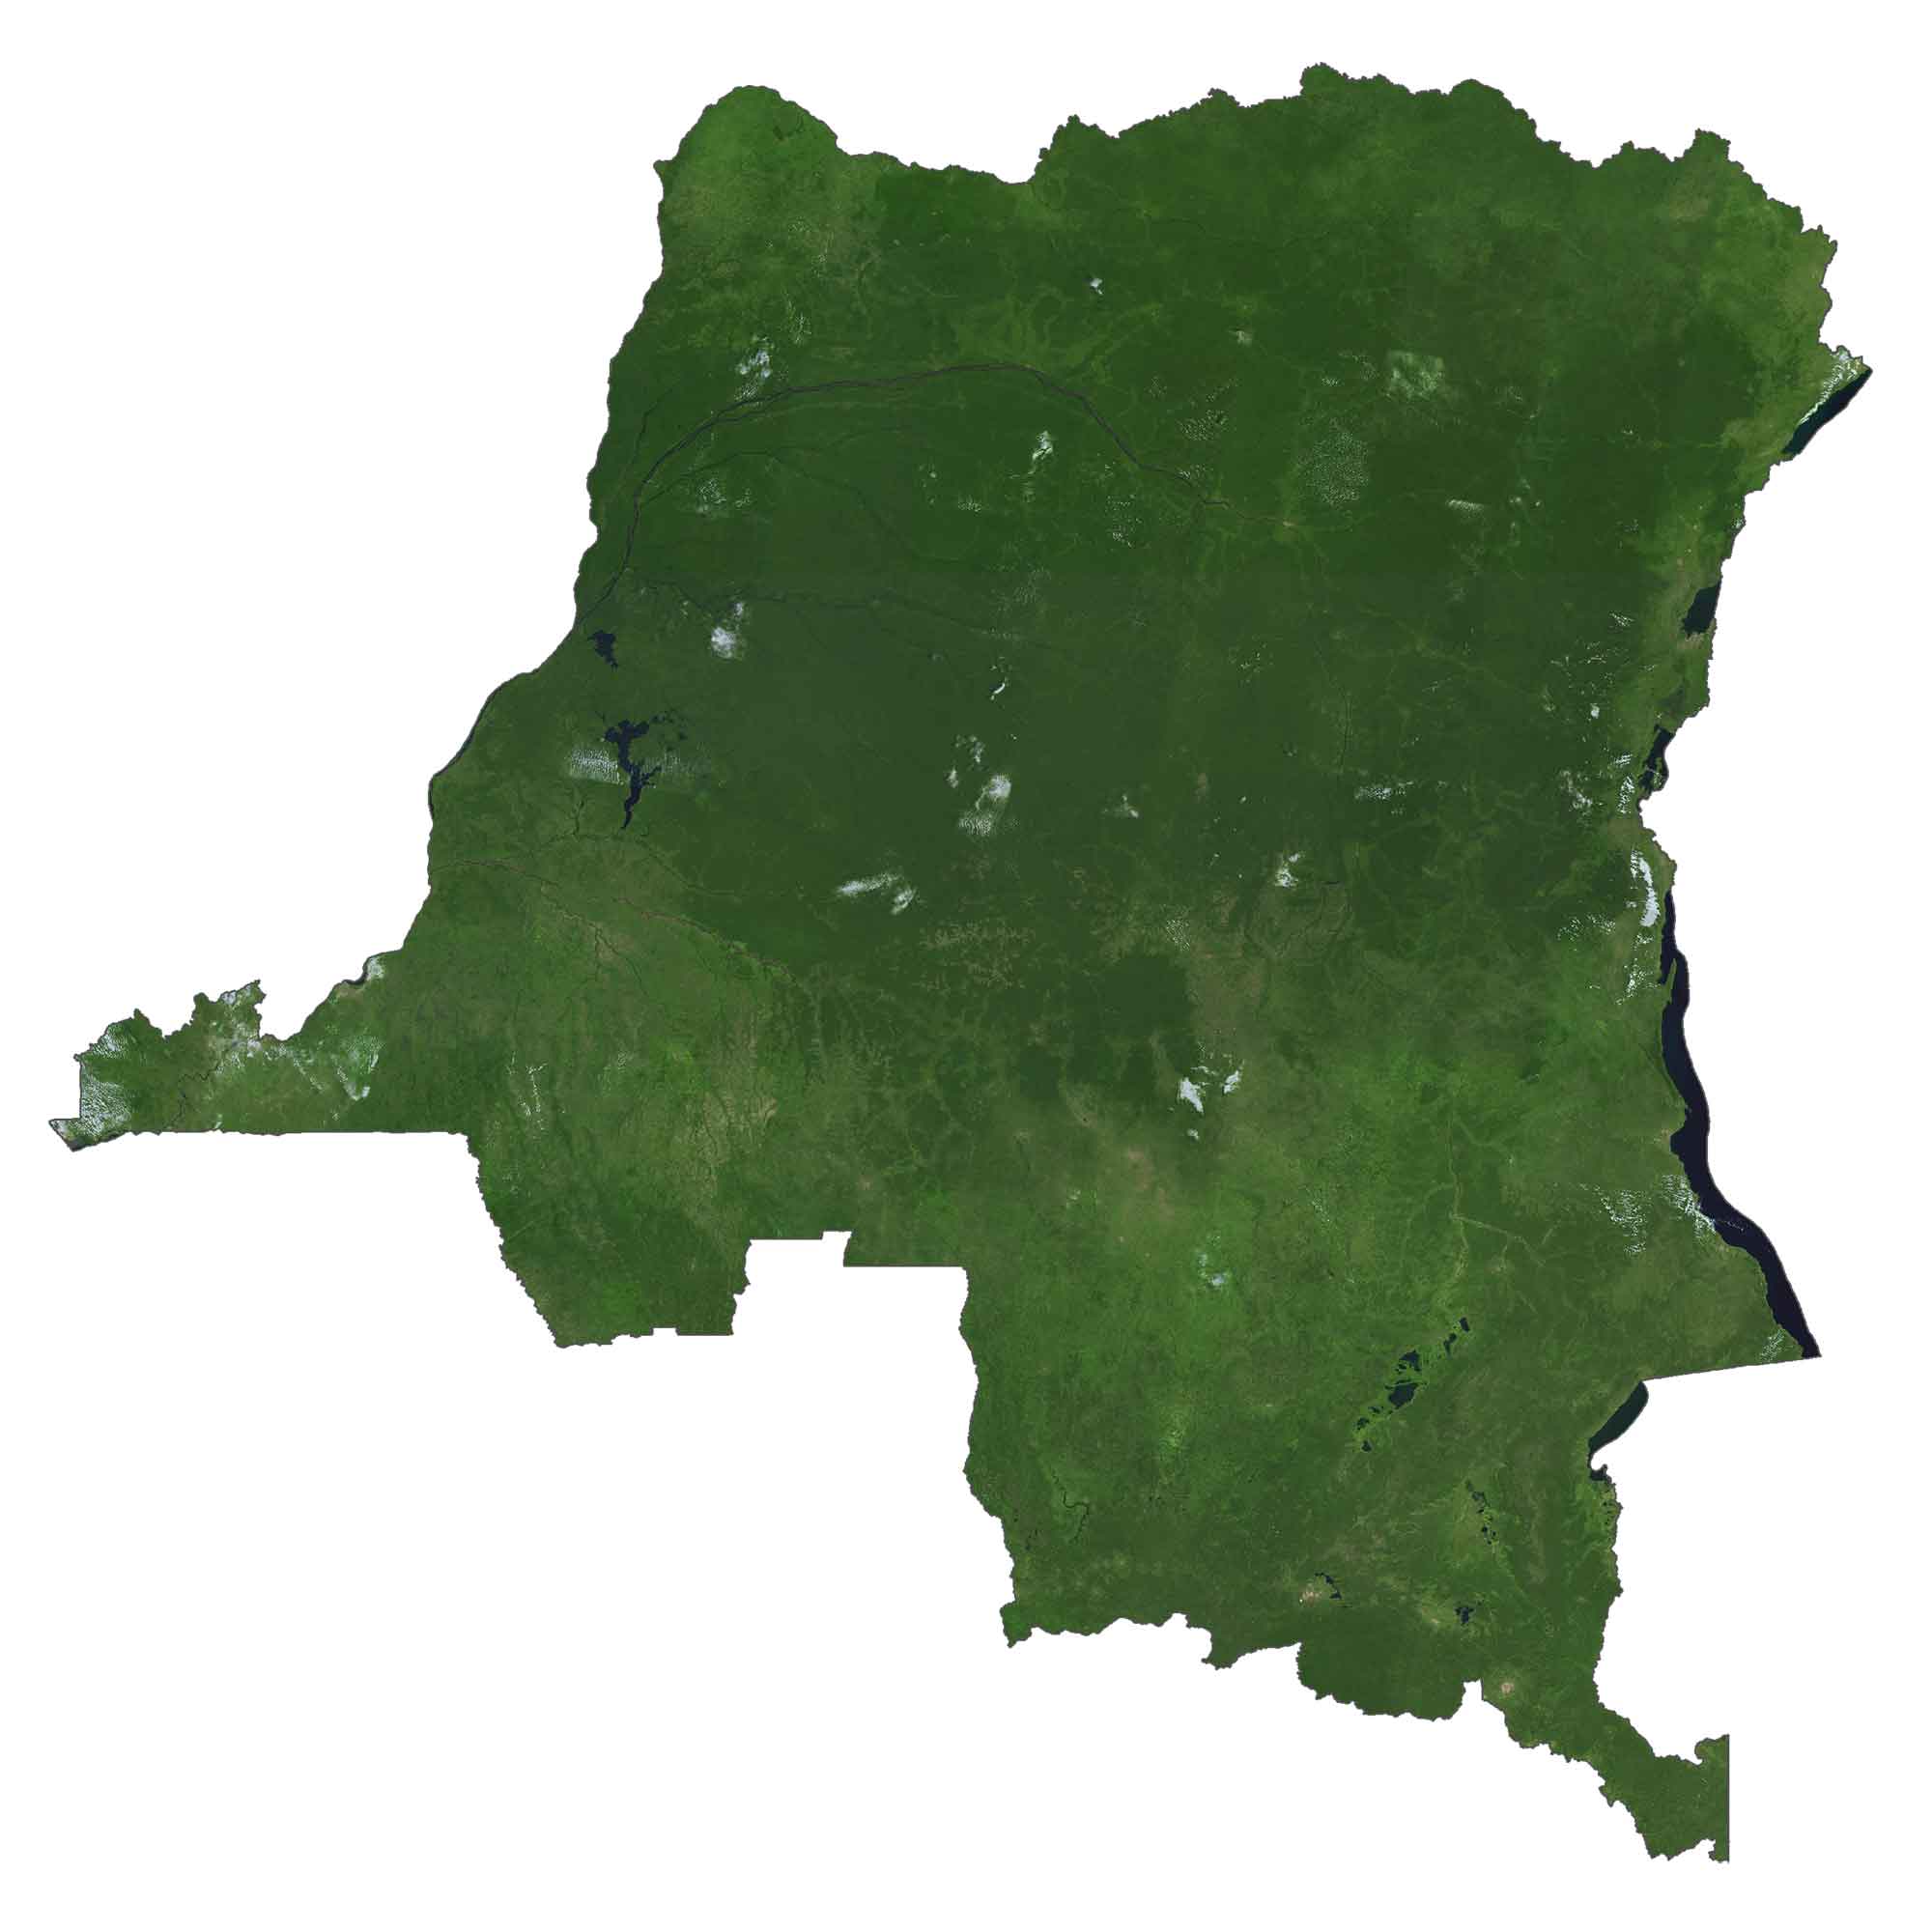 Democratic Republic of Congo Satellite Map